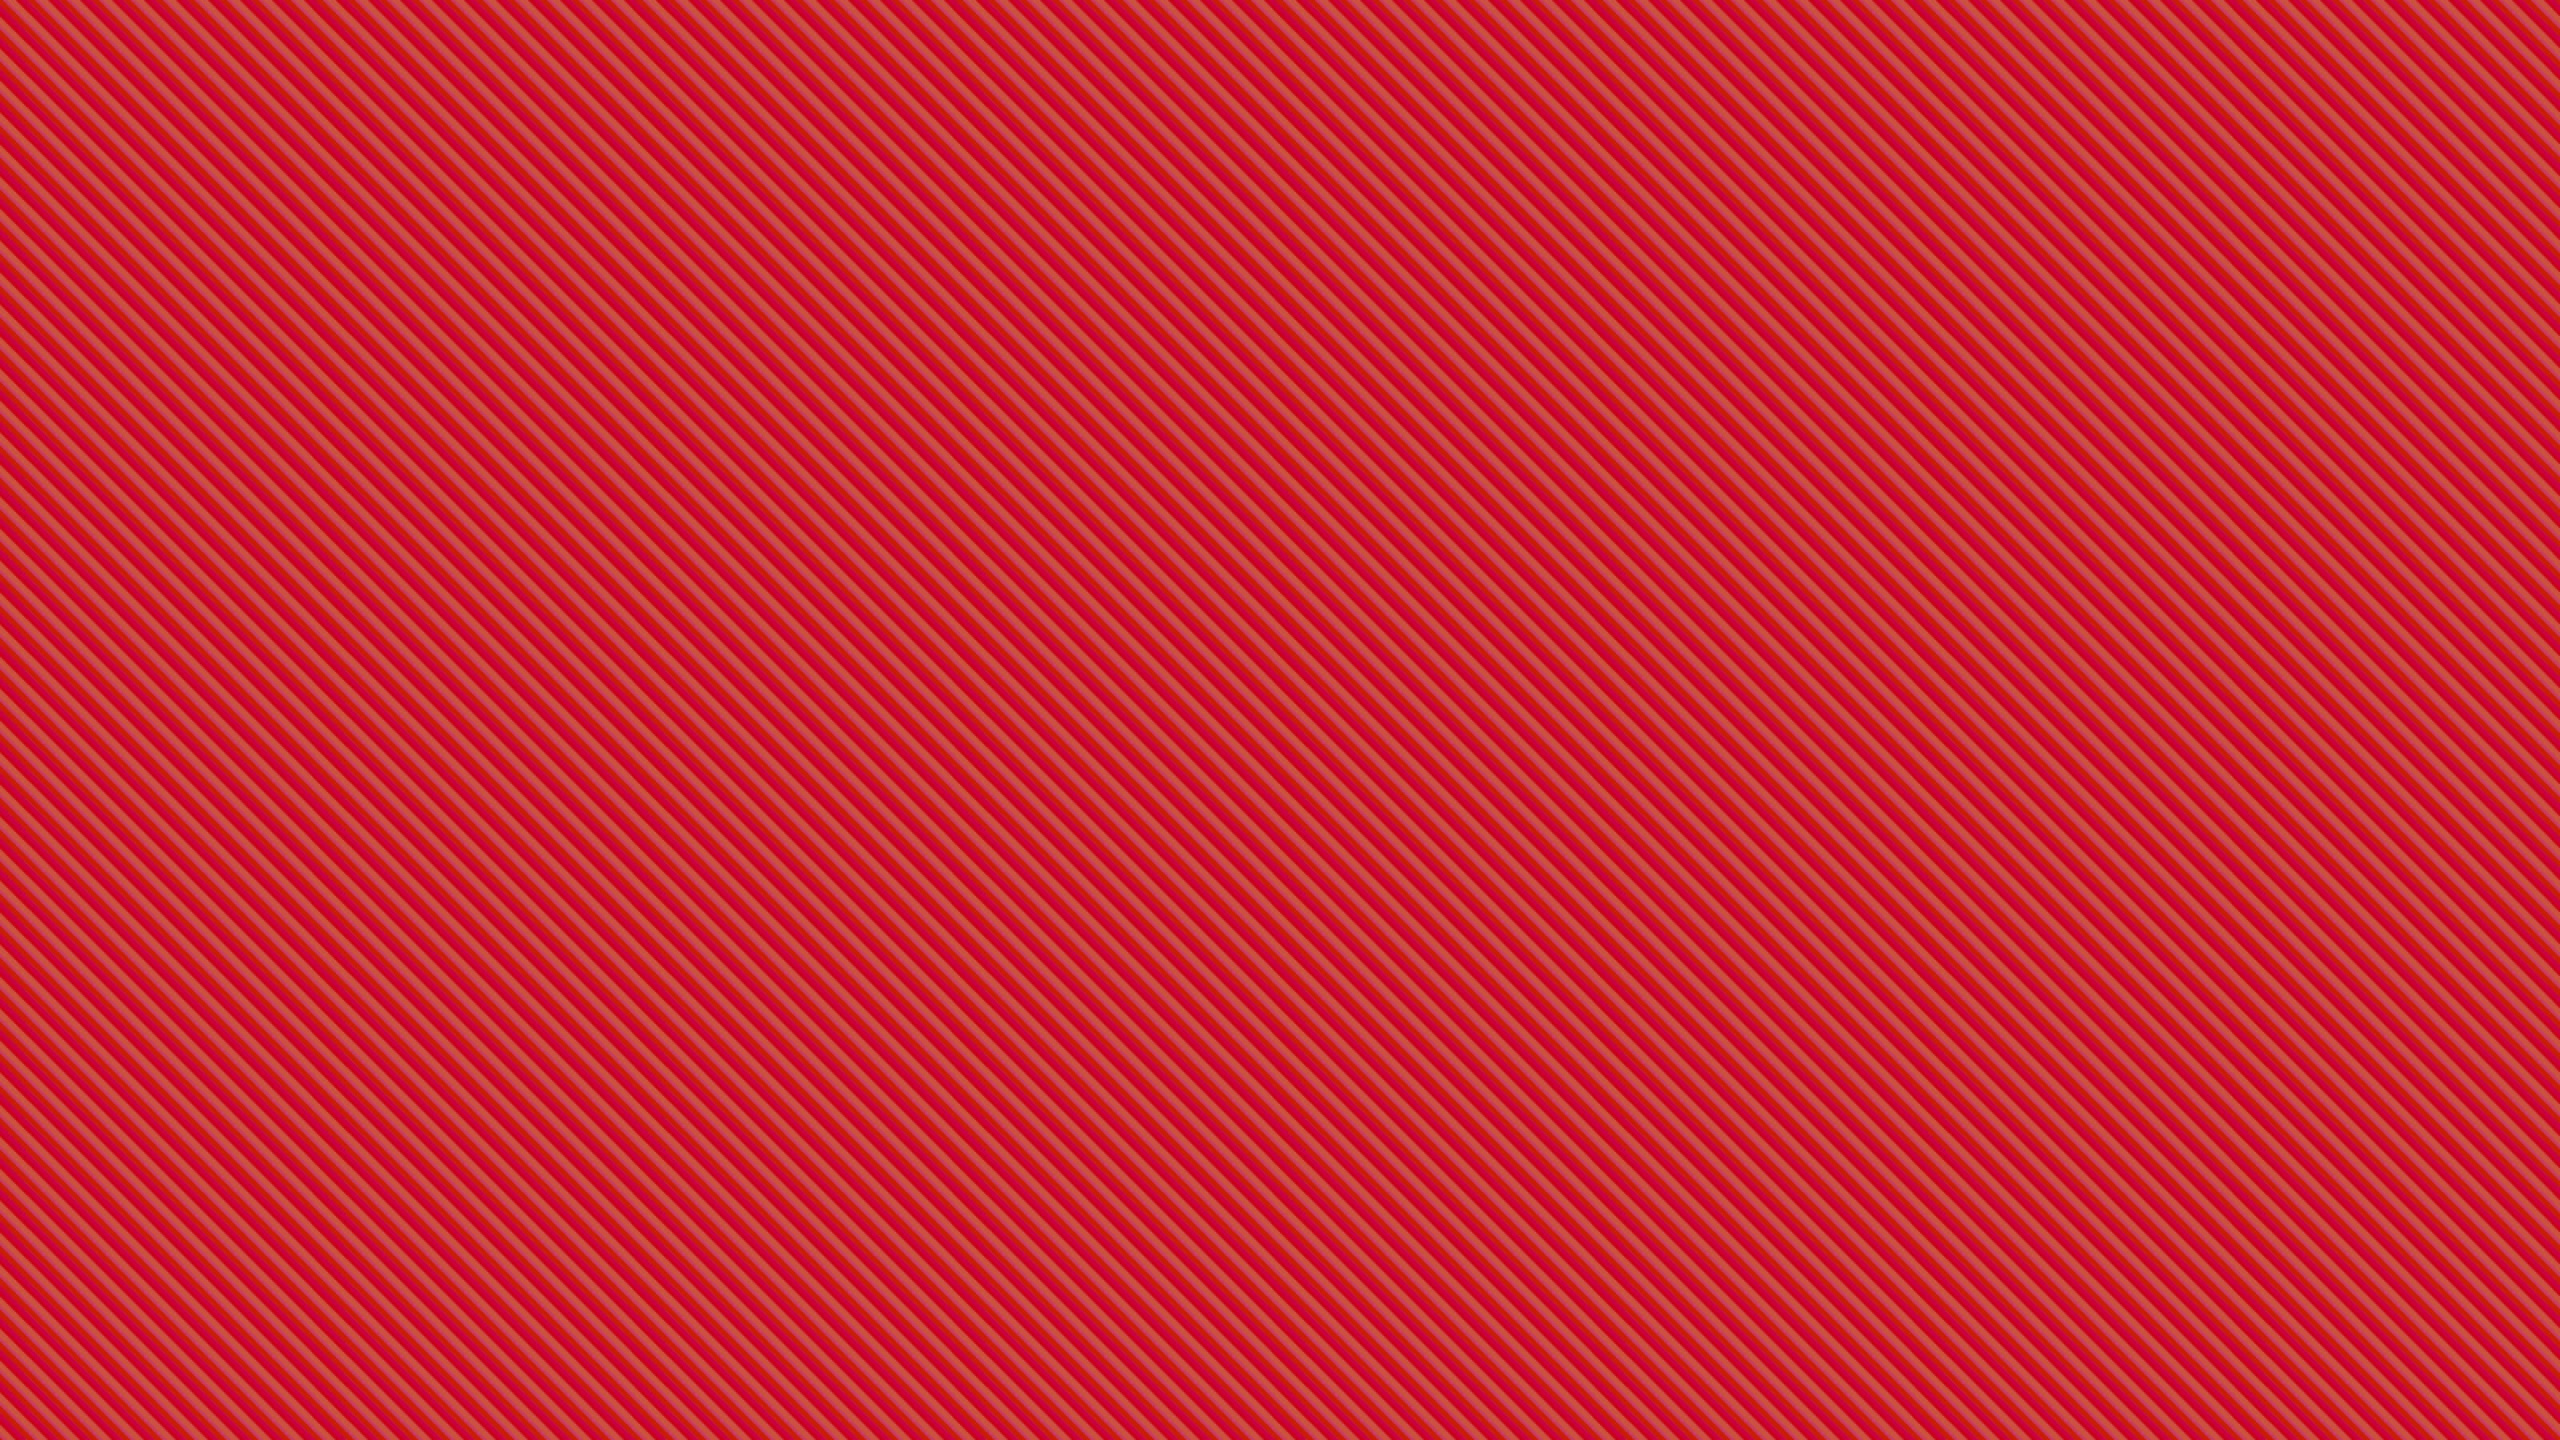 Rot-weiß Gestreiftes Textil. Wallpaper in 2560x1440 Resolution